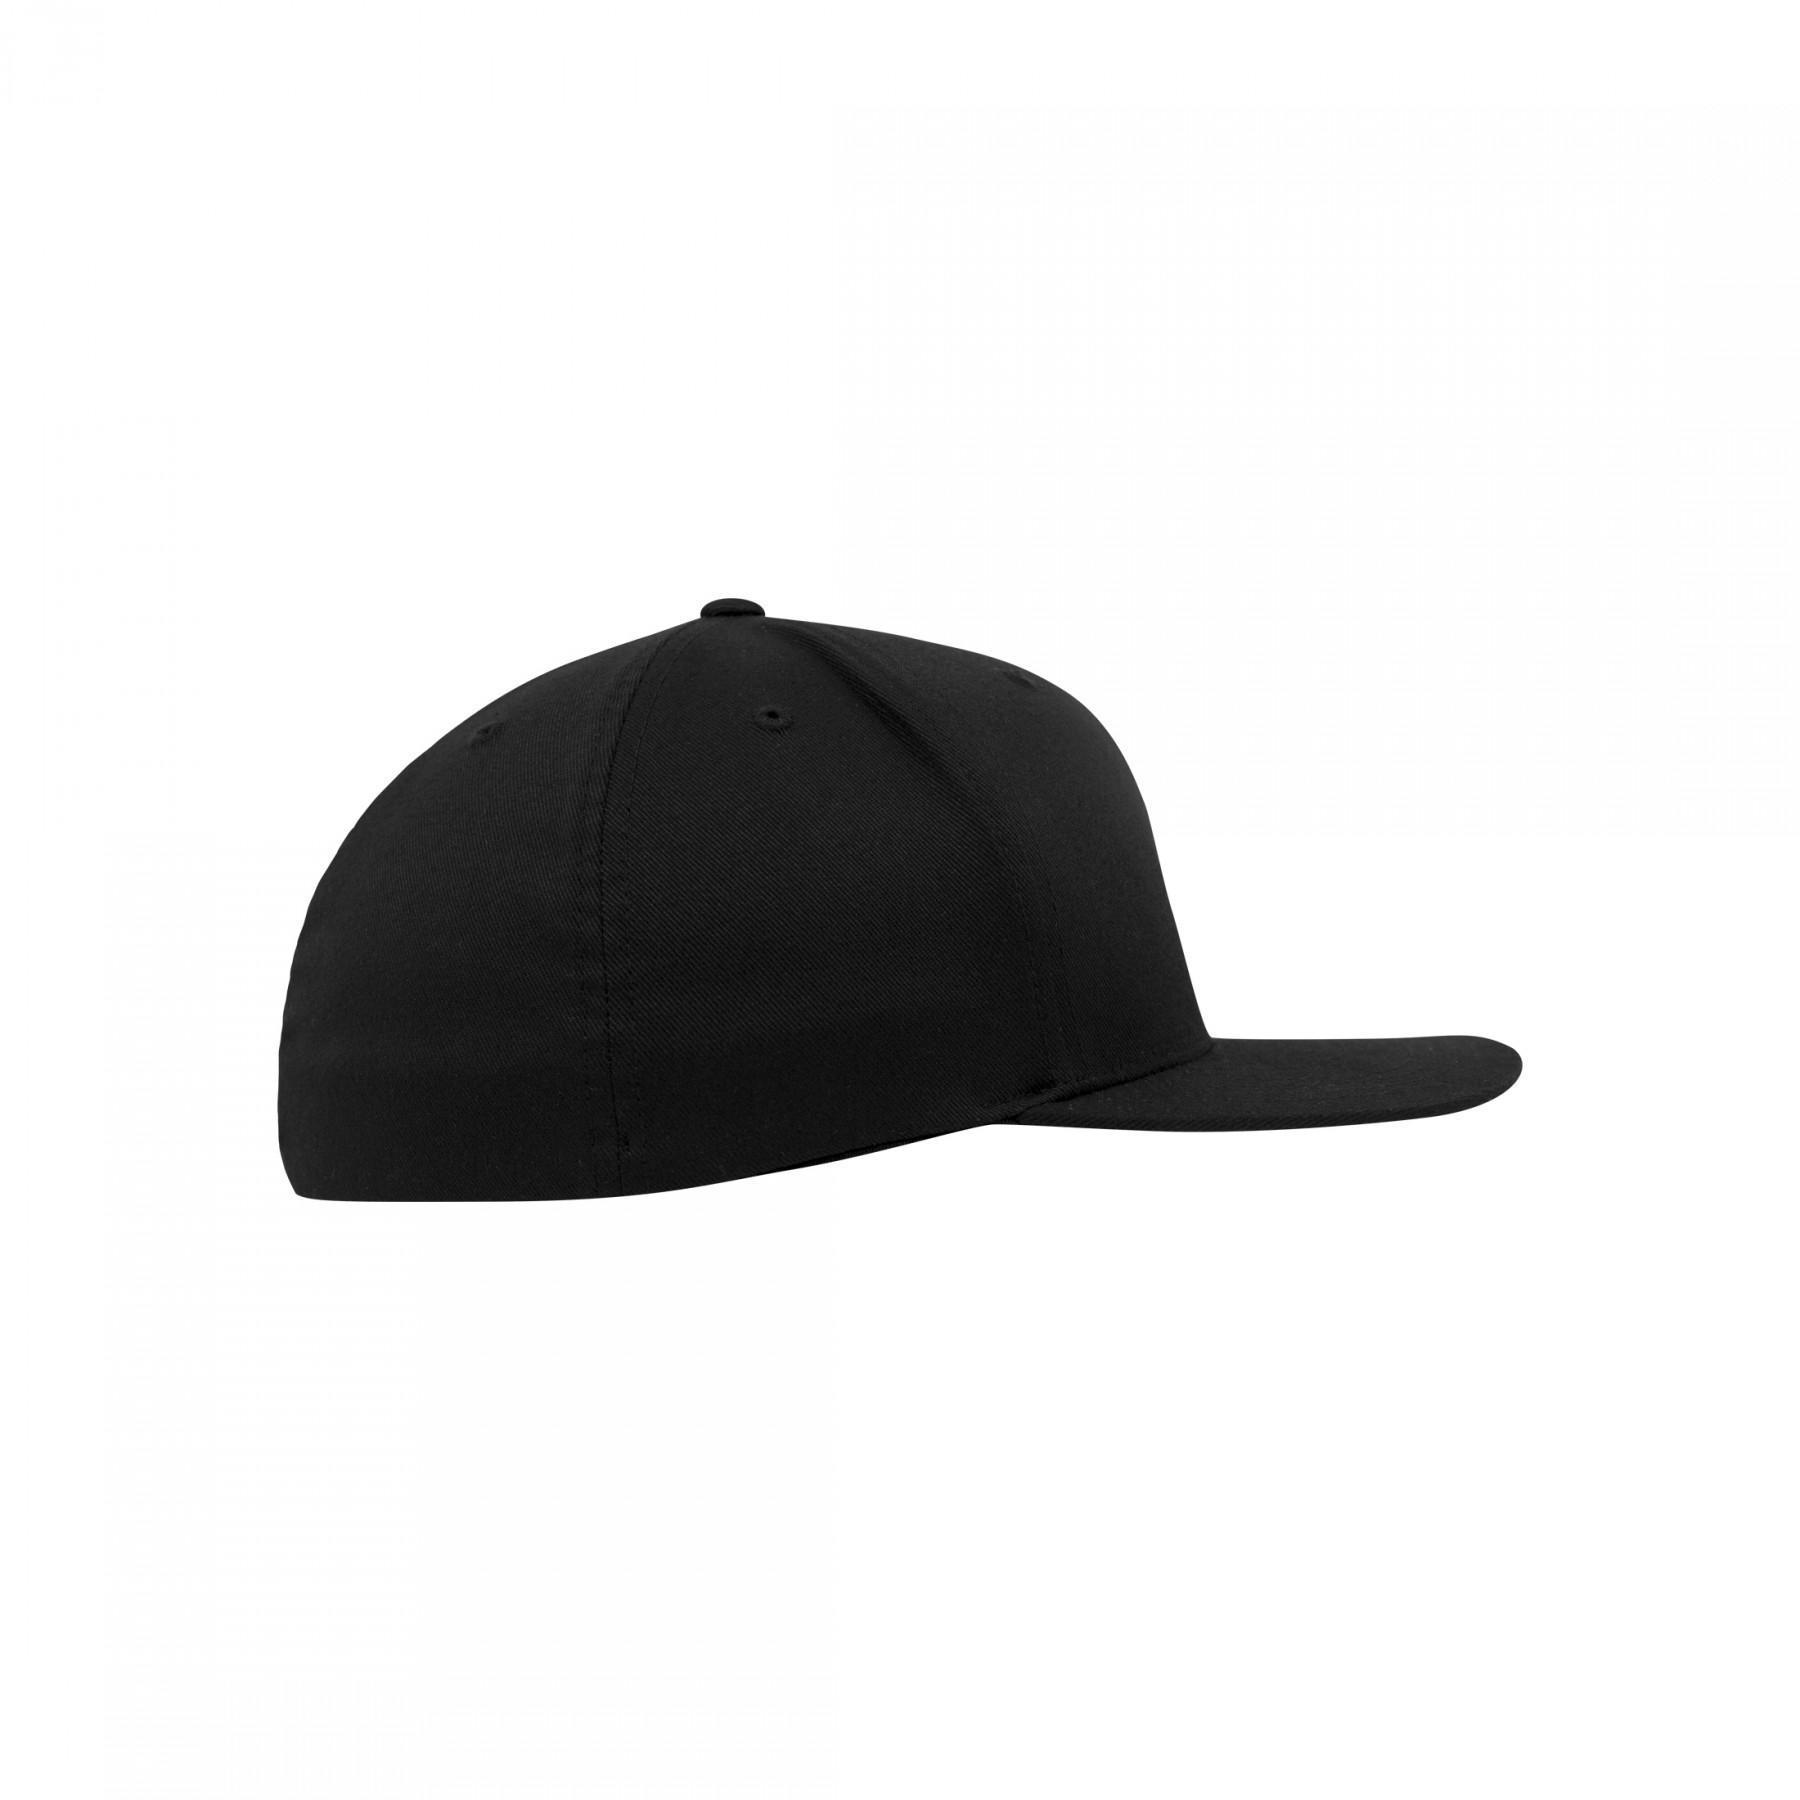 Kapsyl Flexfit flat visor